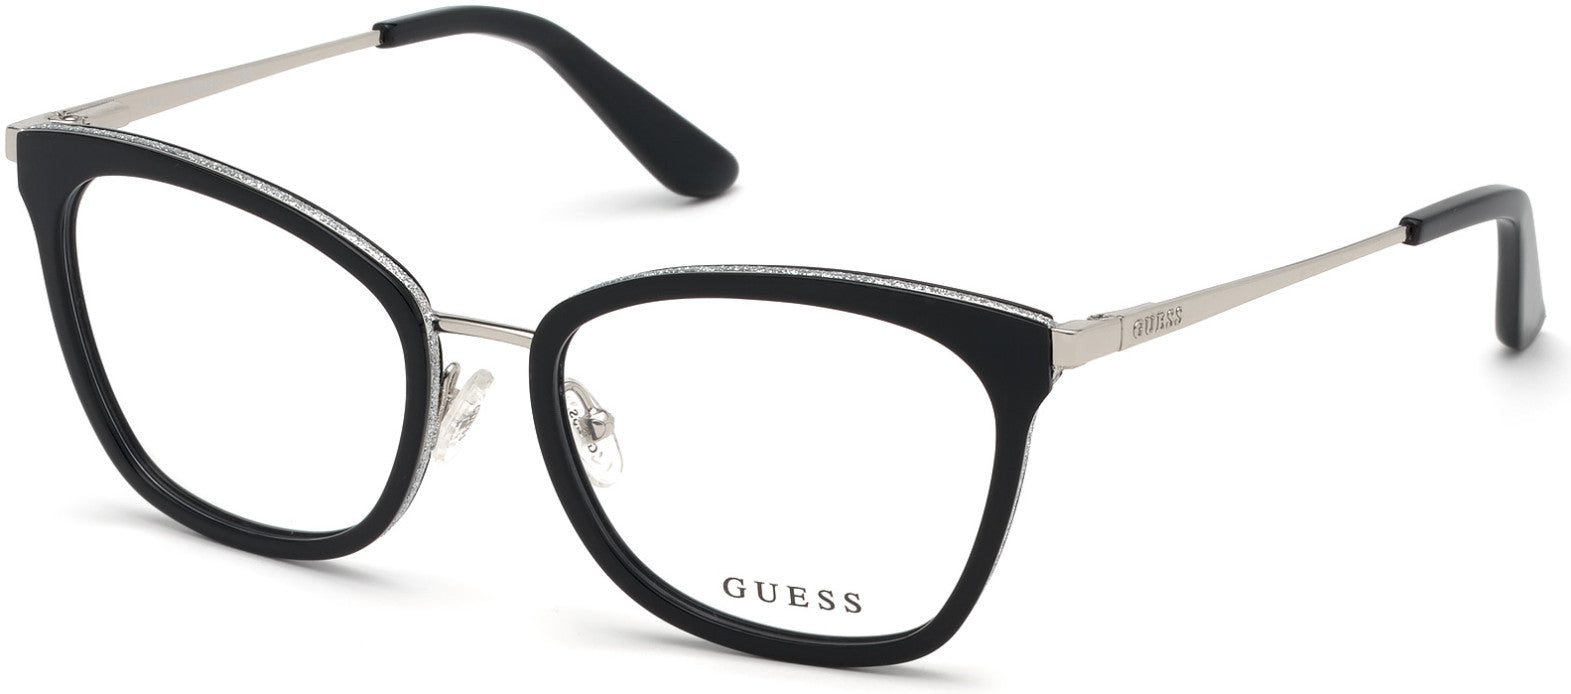 Guess GU2706 Geometric Eyeglasses 001-001 - Shiny Black